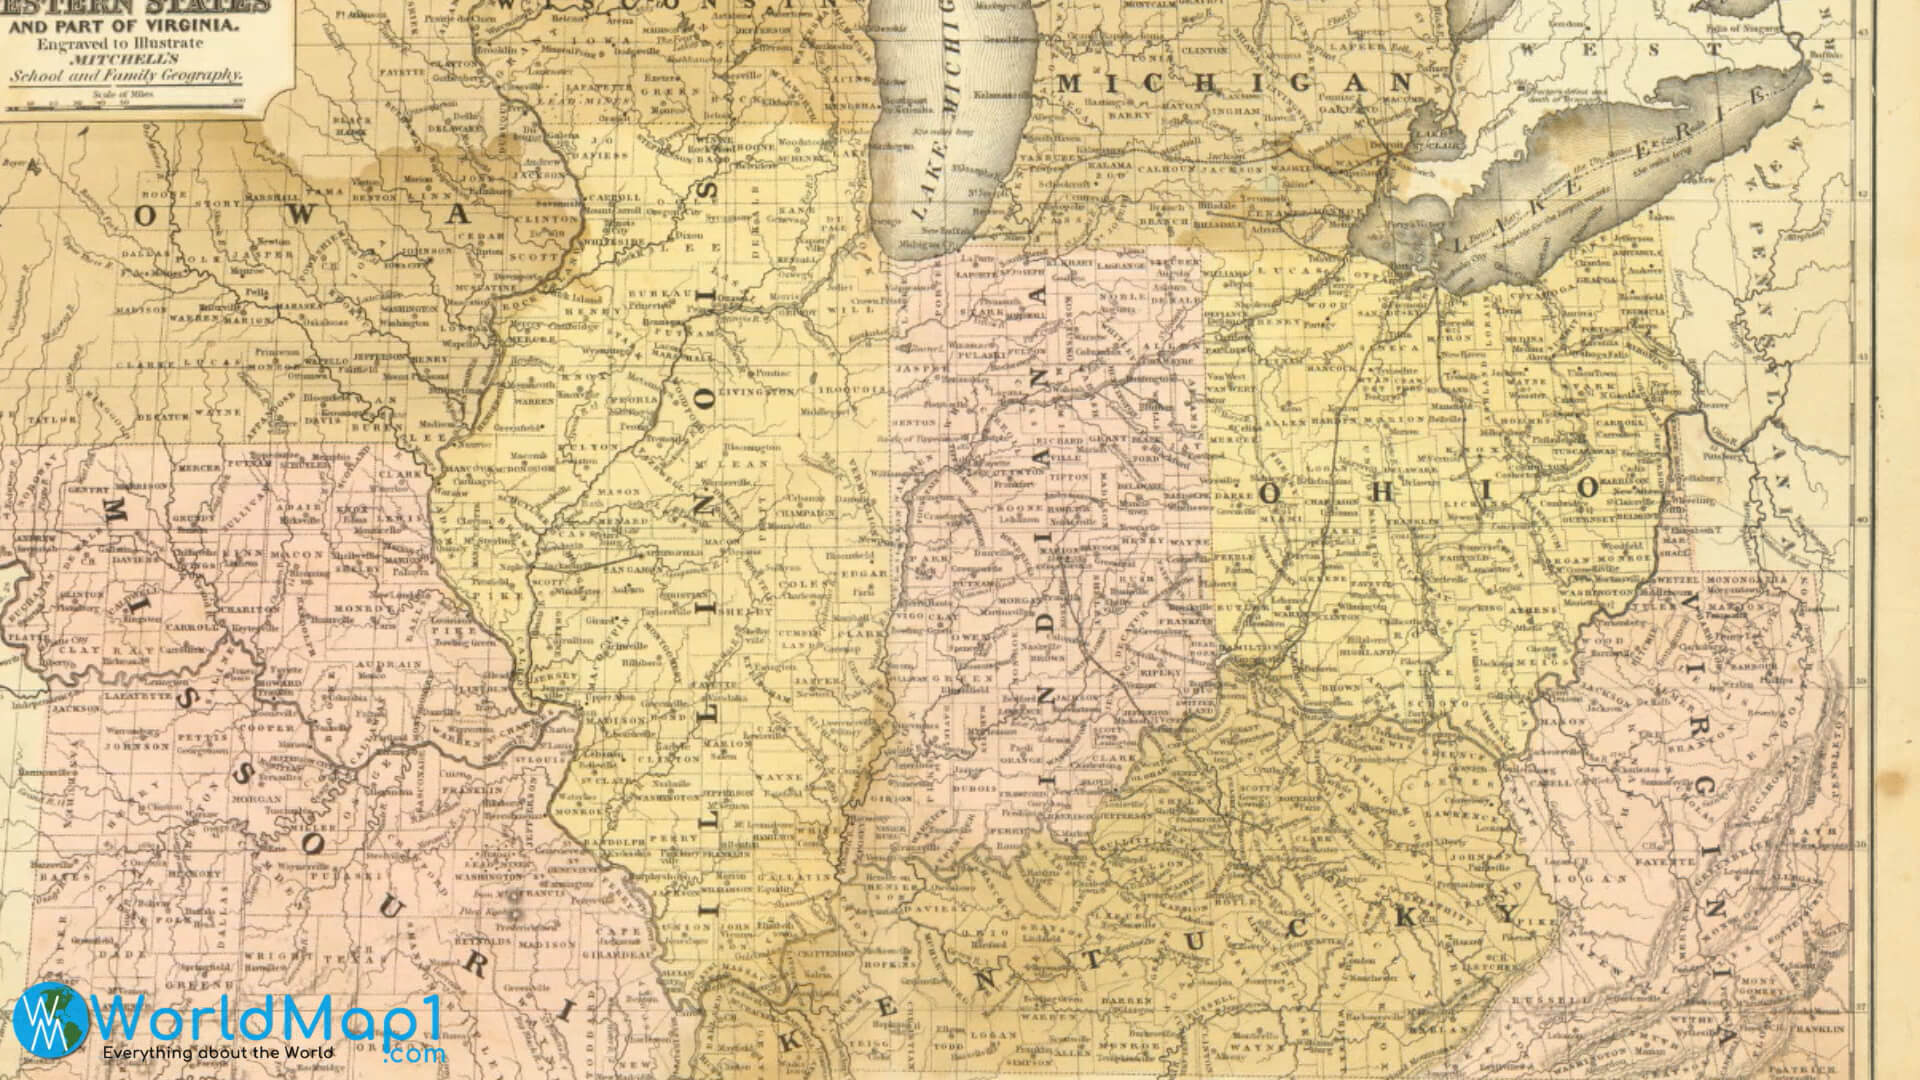 Illinois Historical Map